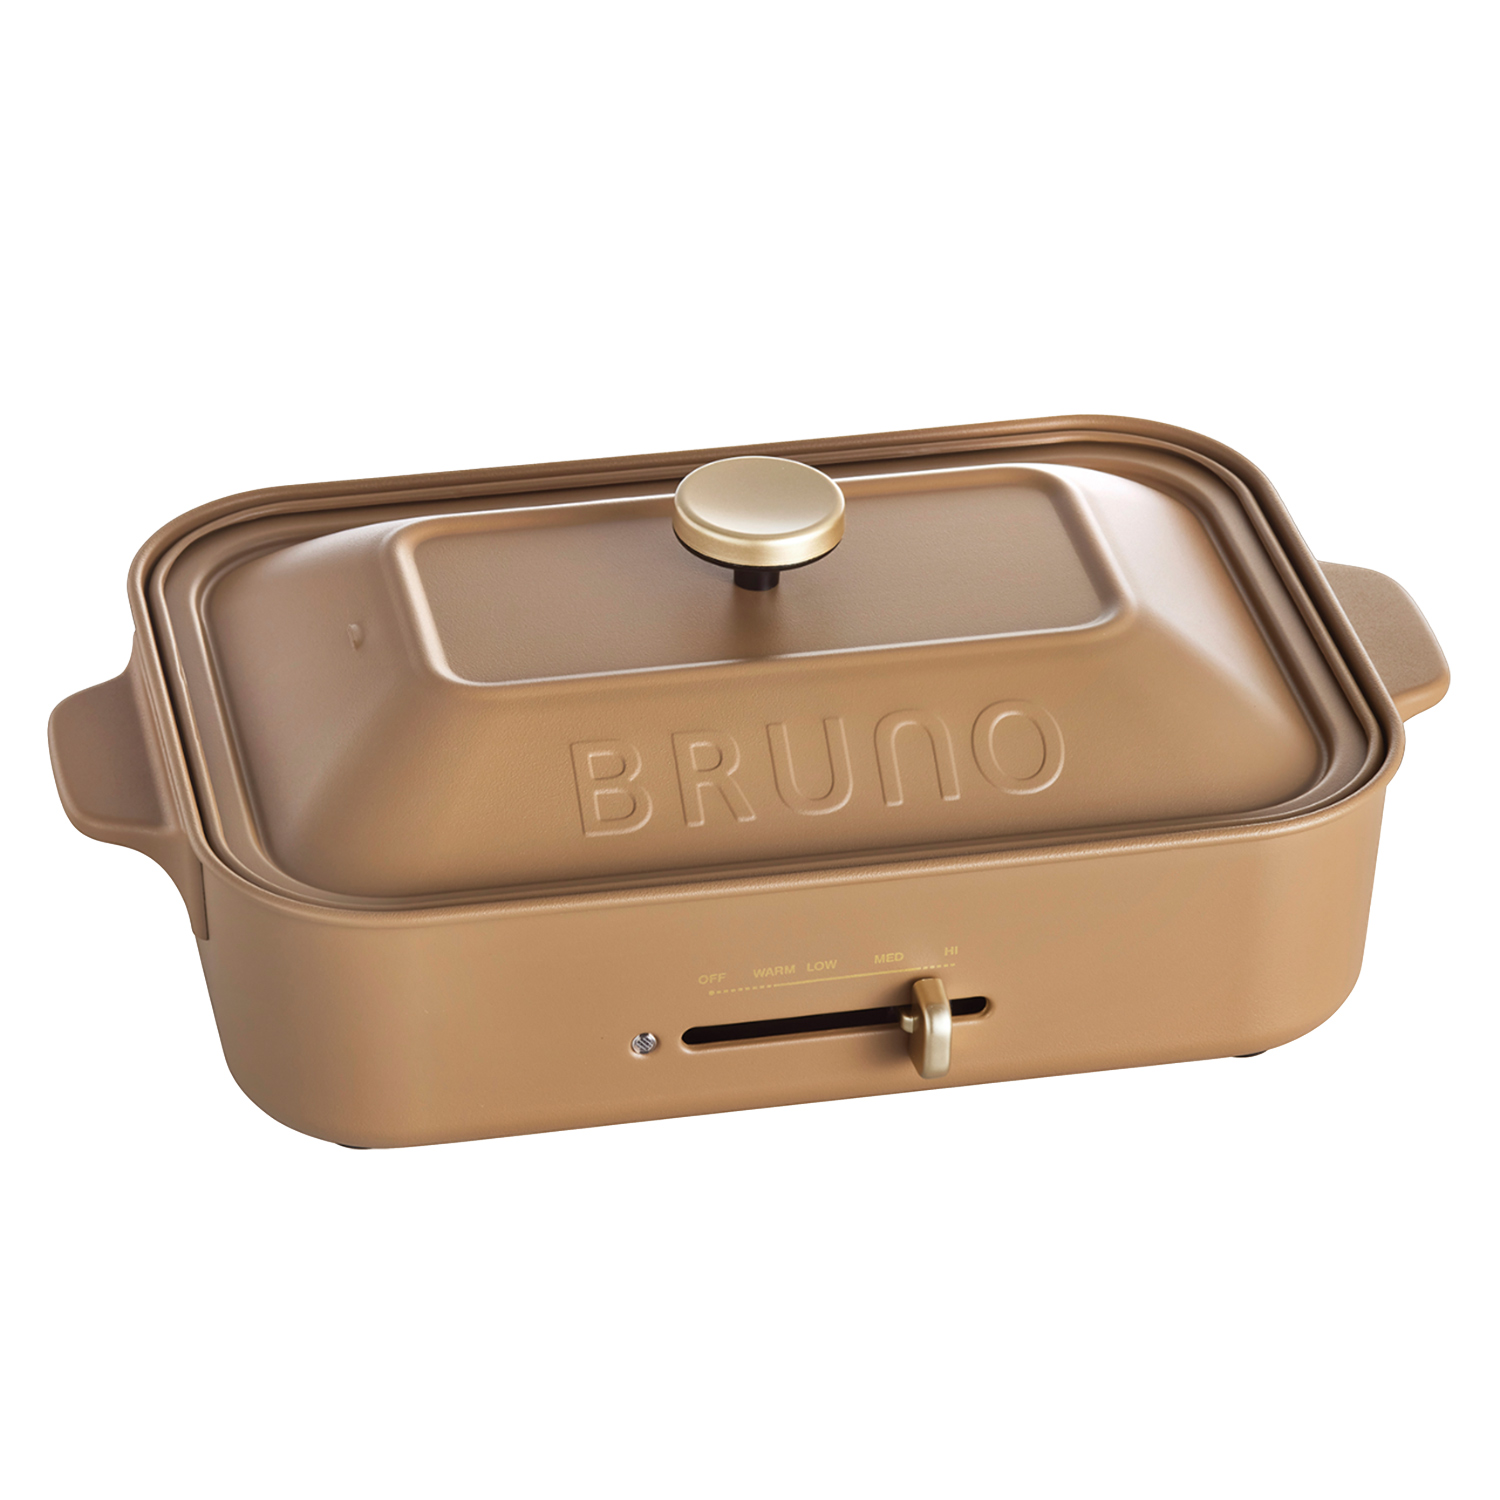 ブルーノ BRUNO ホットプレート たこ焼き器 焼肉 コンパクト 平面 電気式 ヒーター式 レシピ...